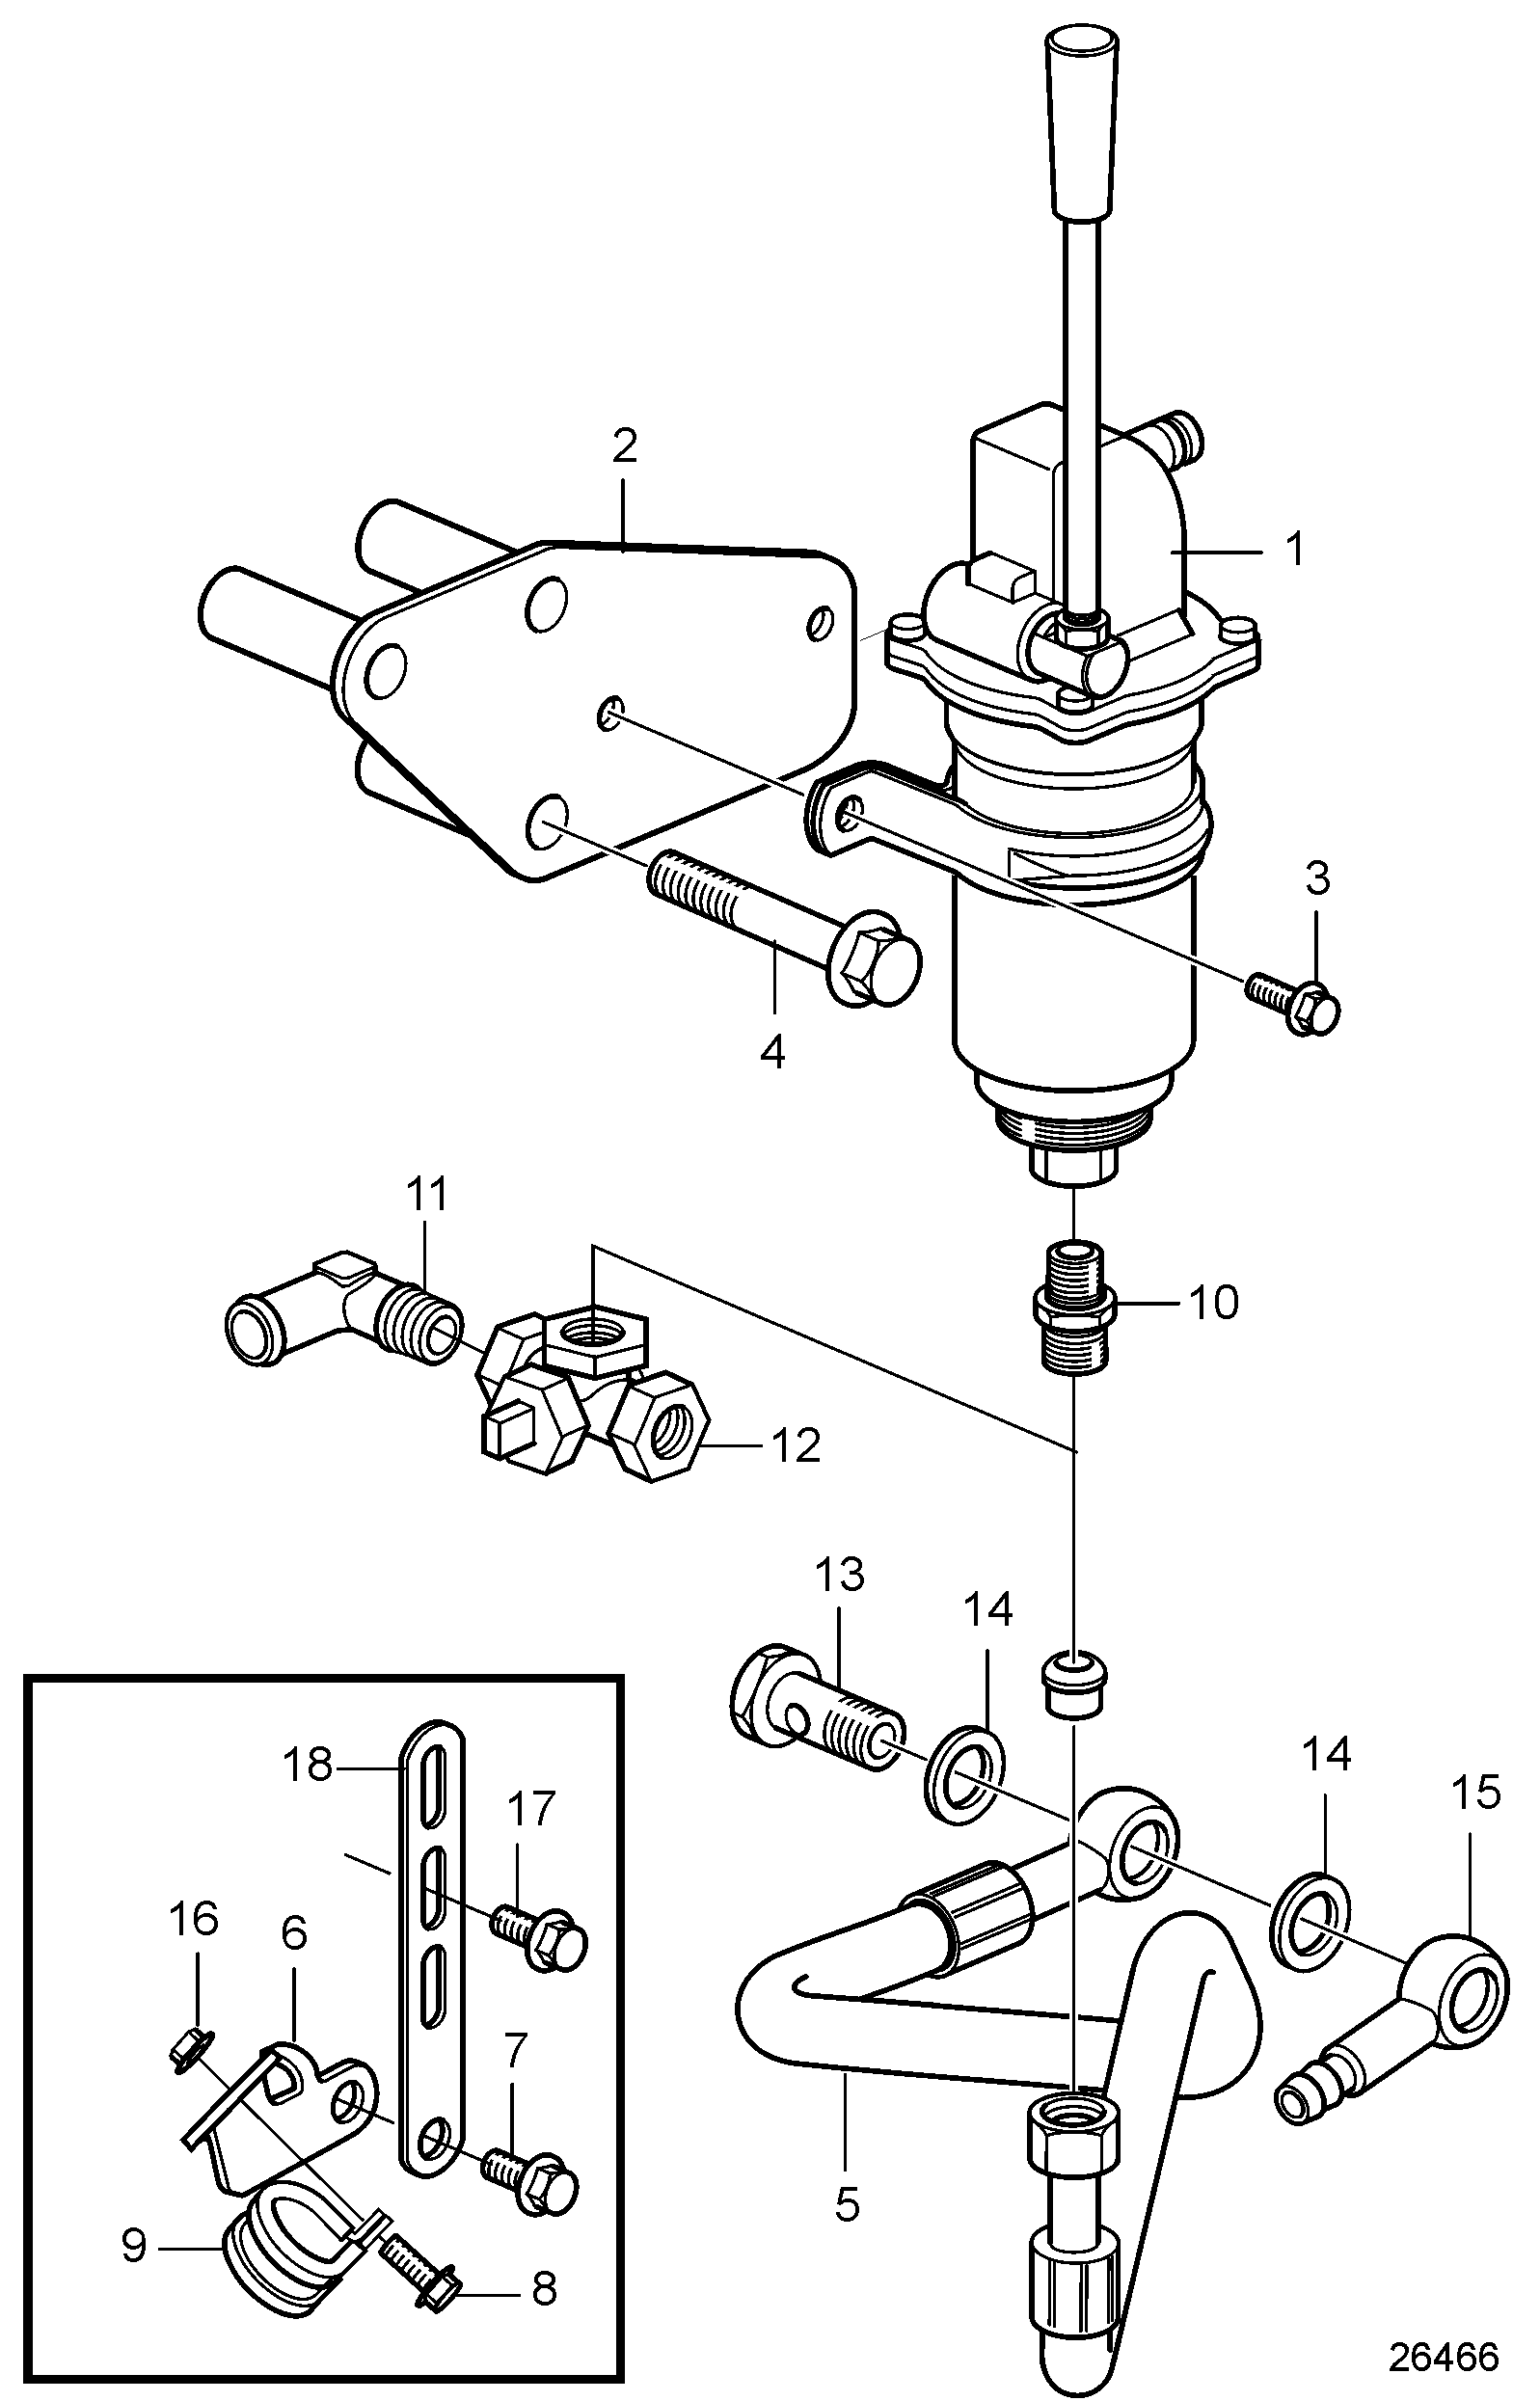 Pompe de vidange d'huile et pièces de montage, montée sur moteur pour carter d'huile en aluminium